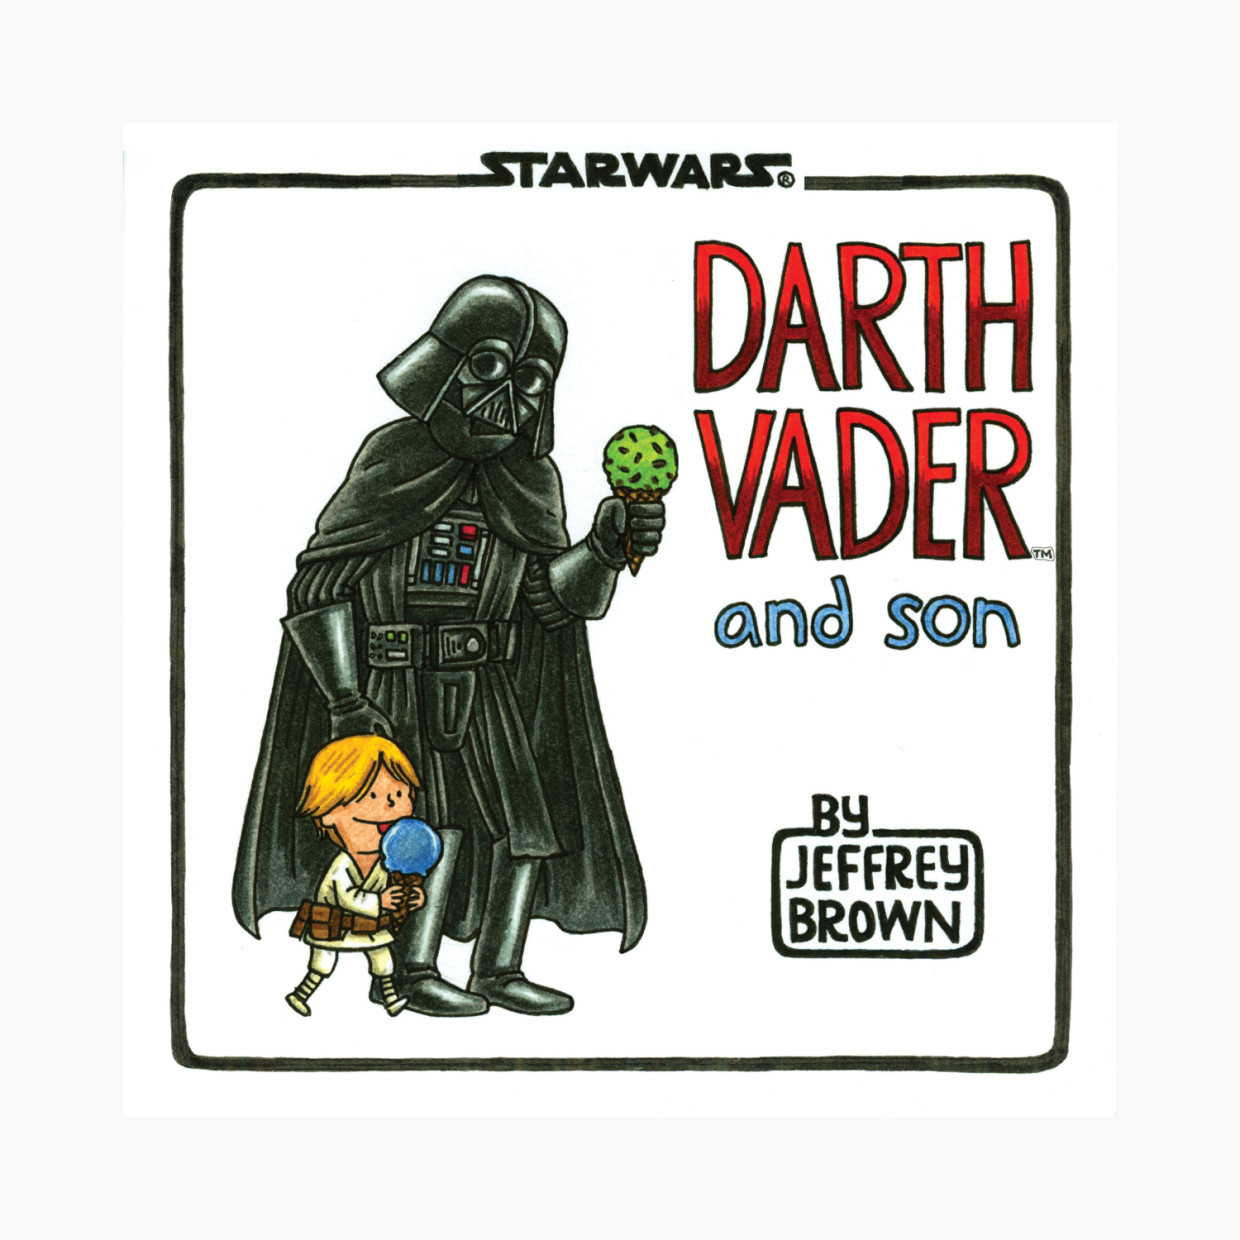 Darth Vader and Son.